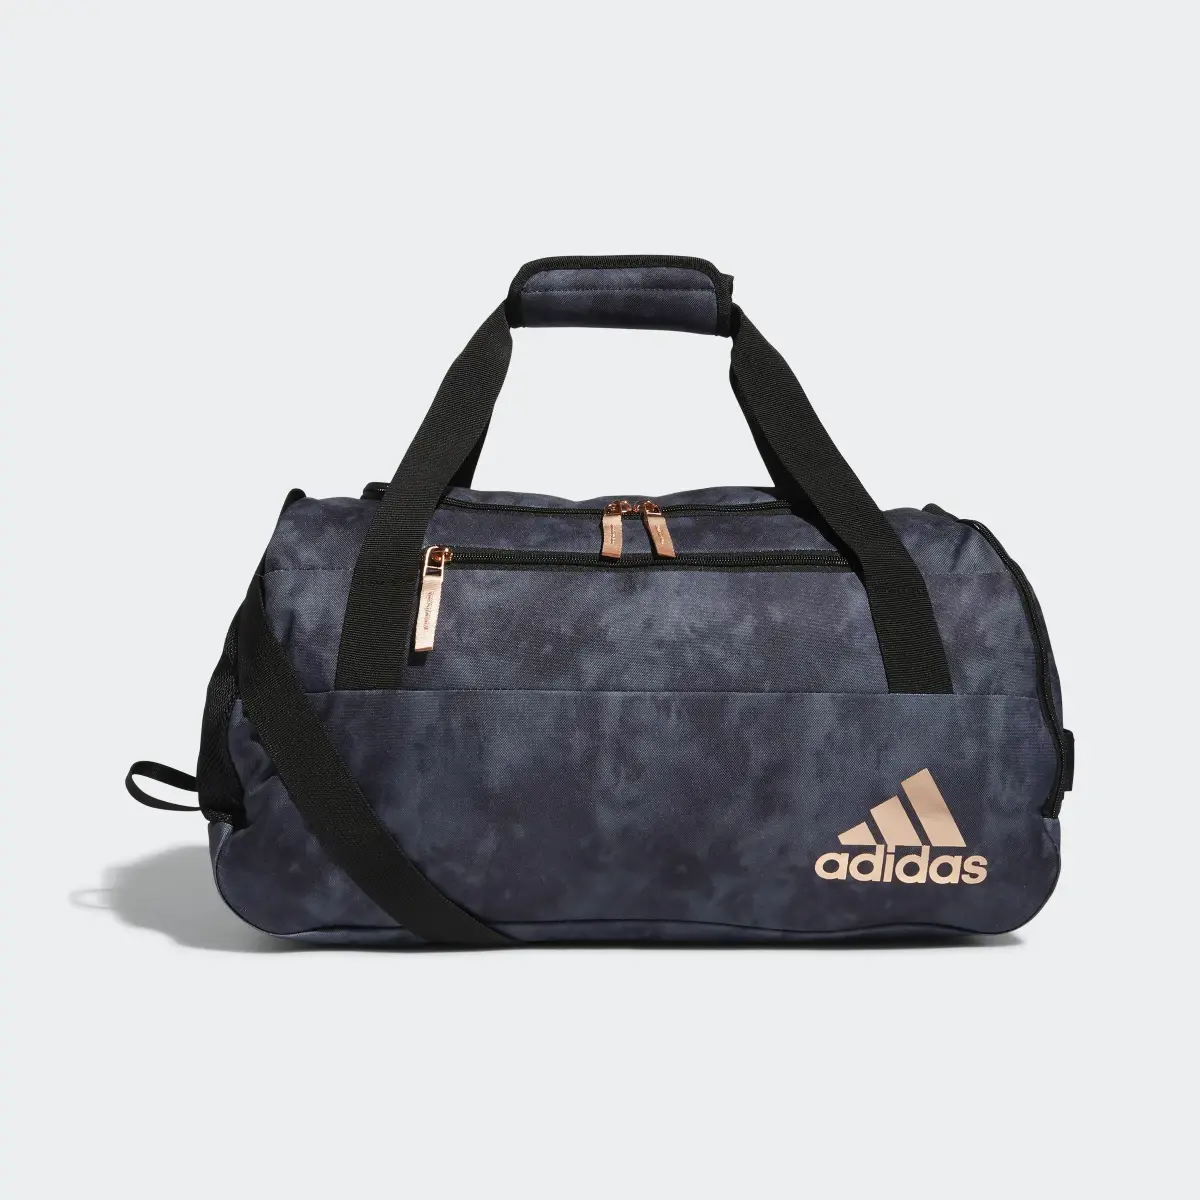 Adidas Squad Duffel Bag. 2